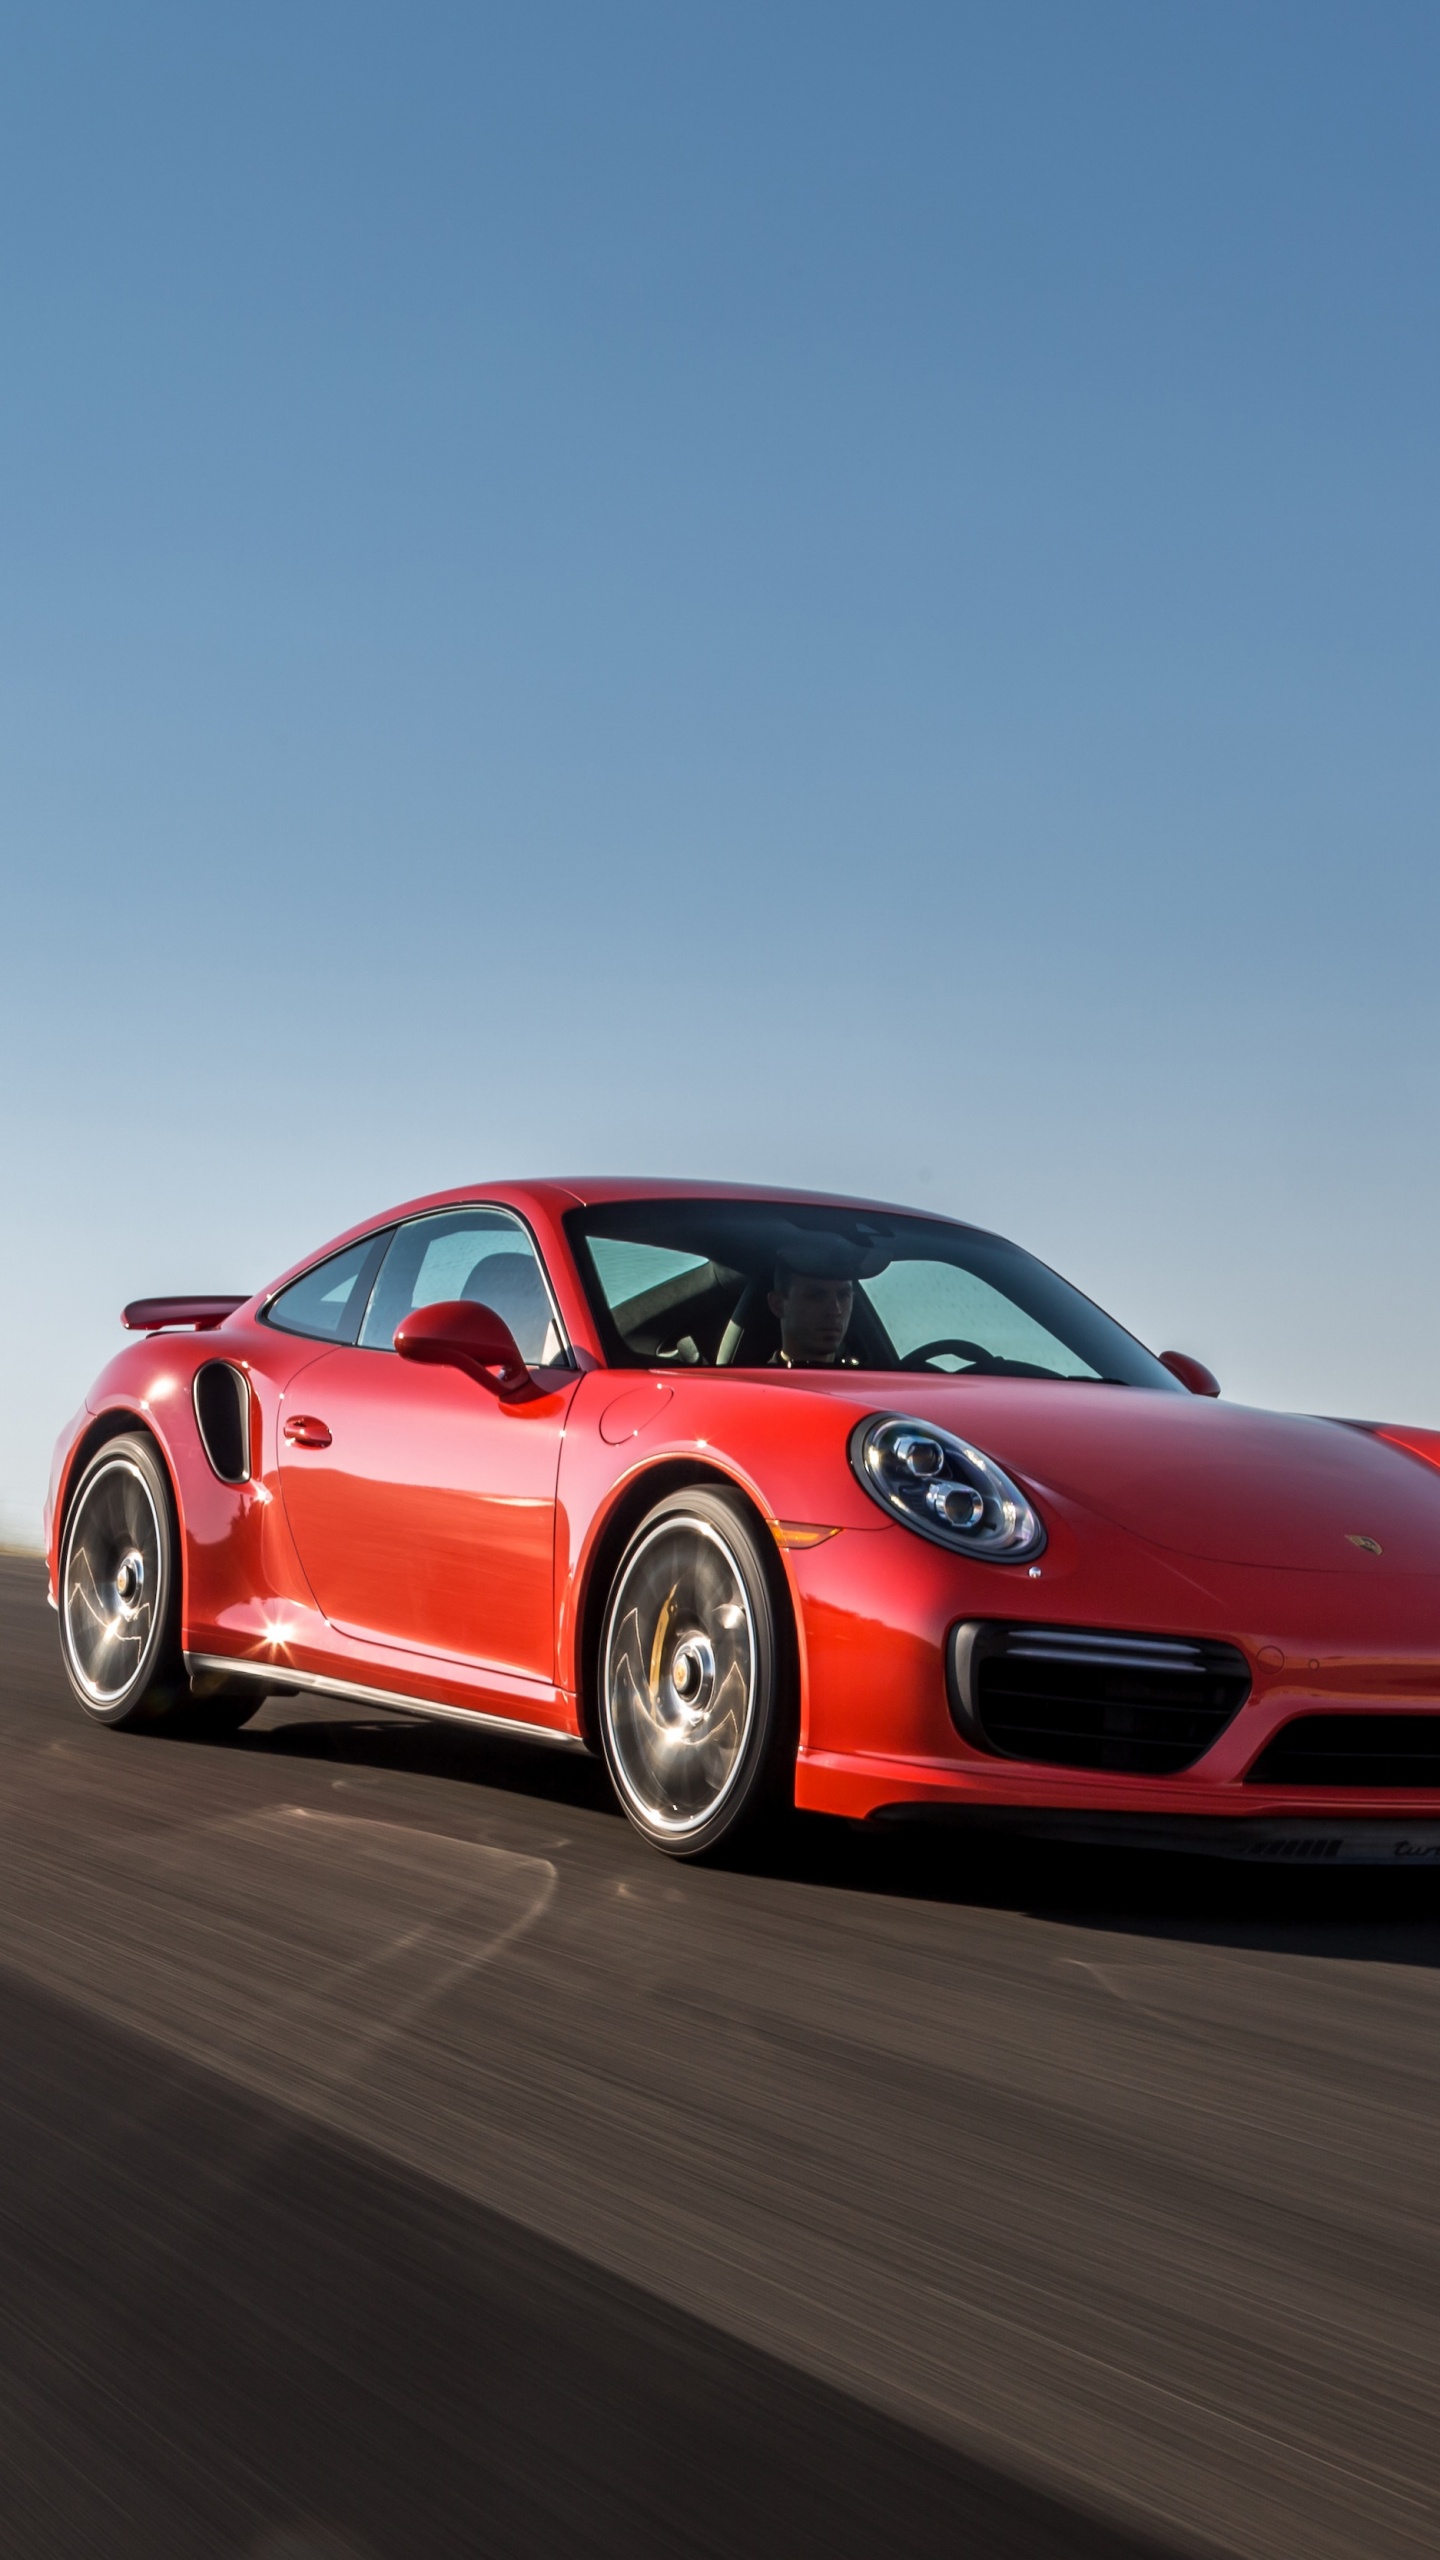 Porsche 911 Rouge Sur Route Pendant la Journée. Wallpaper in 1440x2560 Resolution